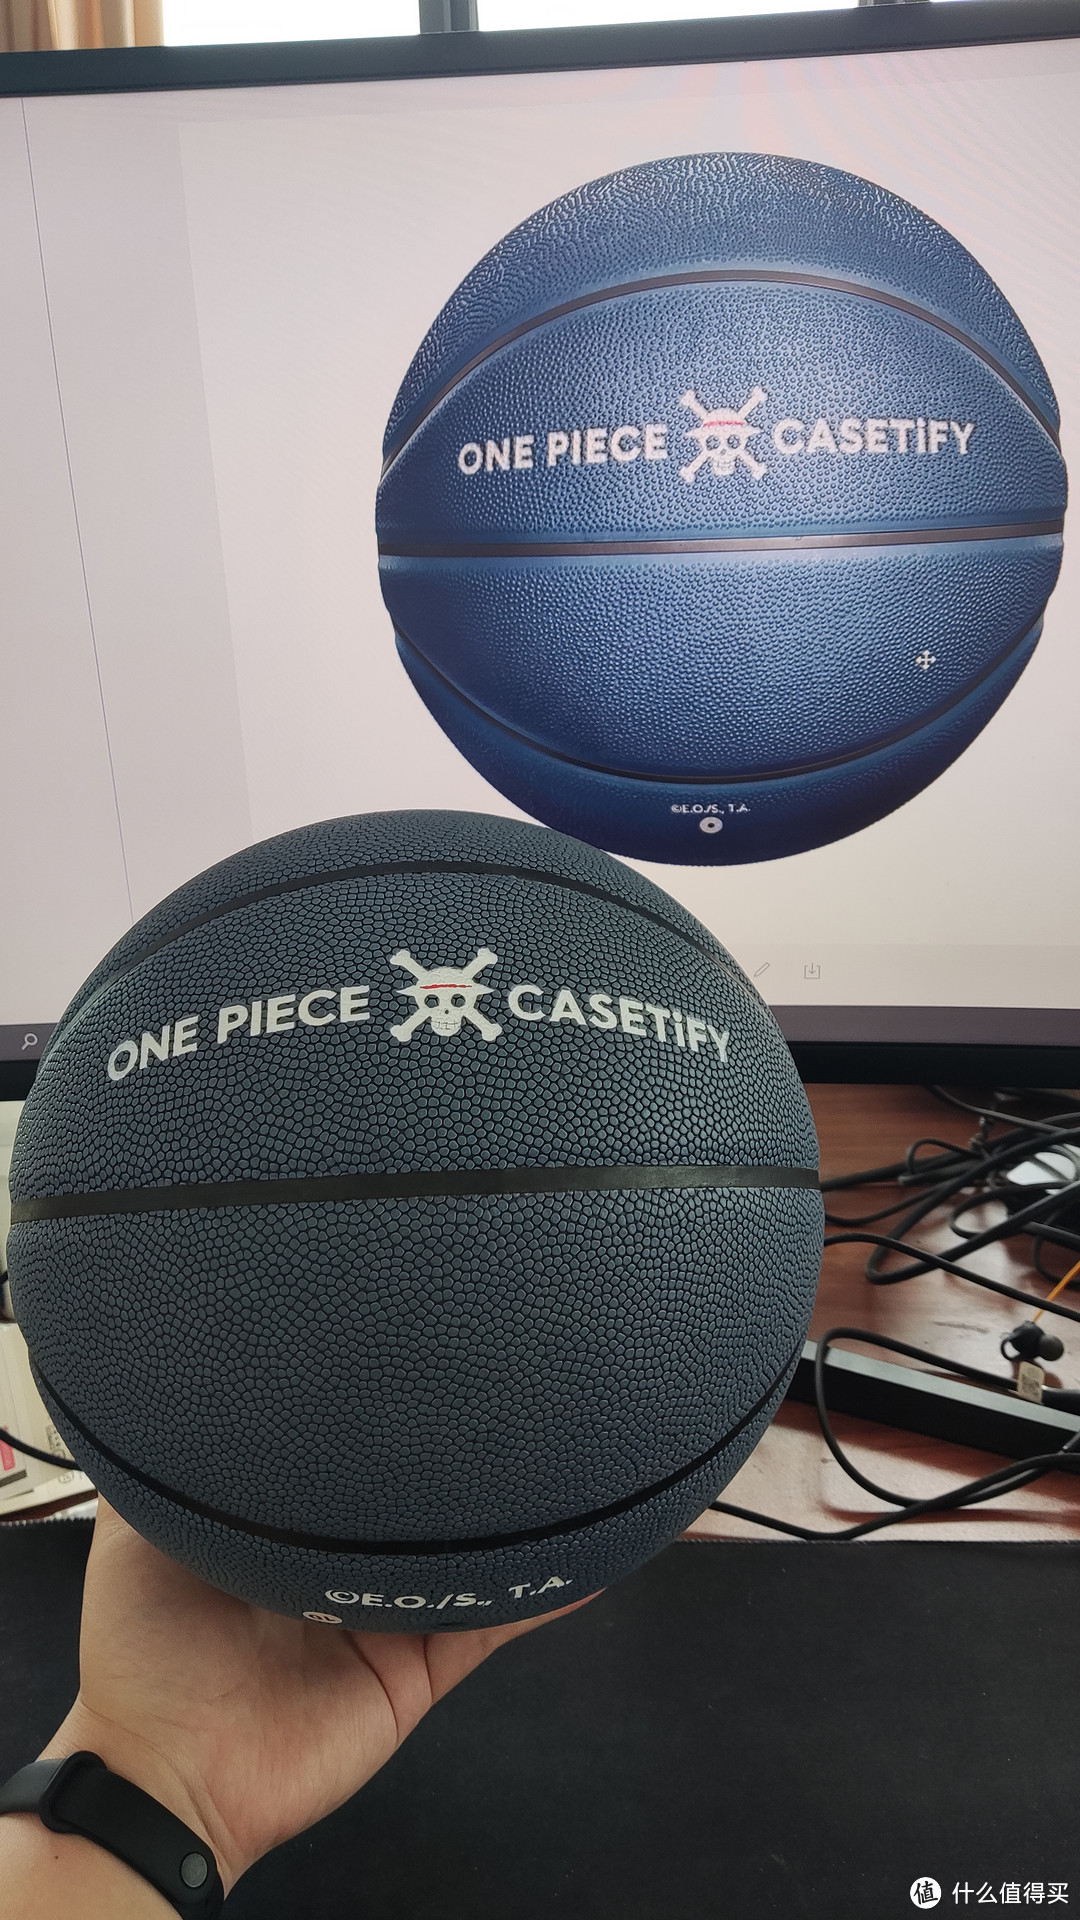 ONE PIECE x CASETiFY 篮球